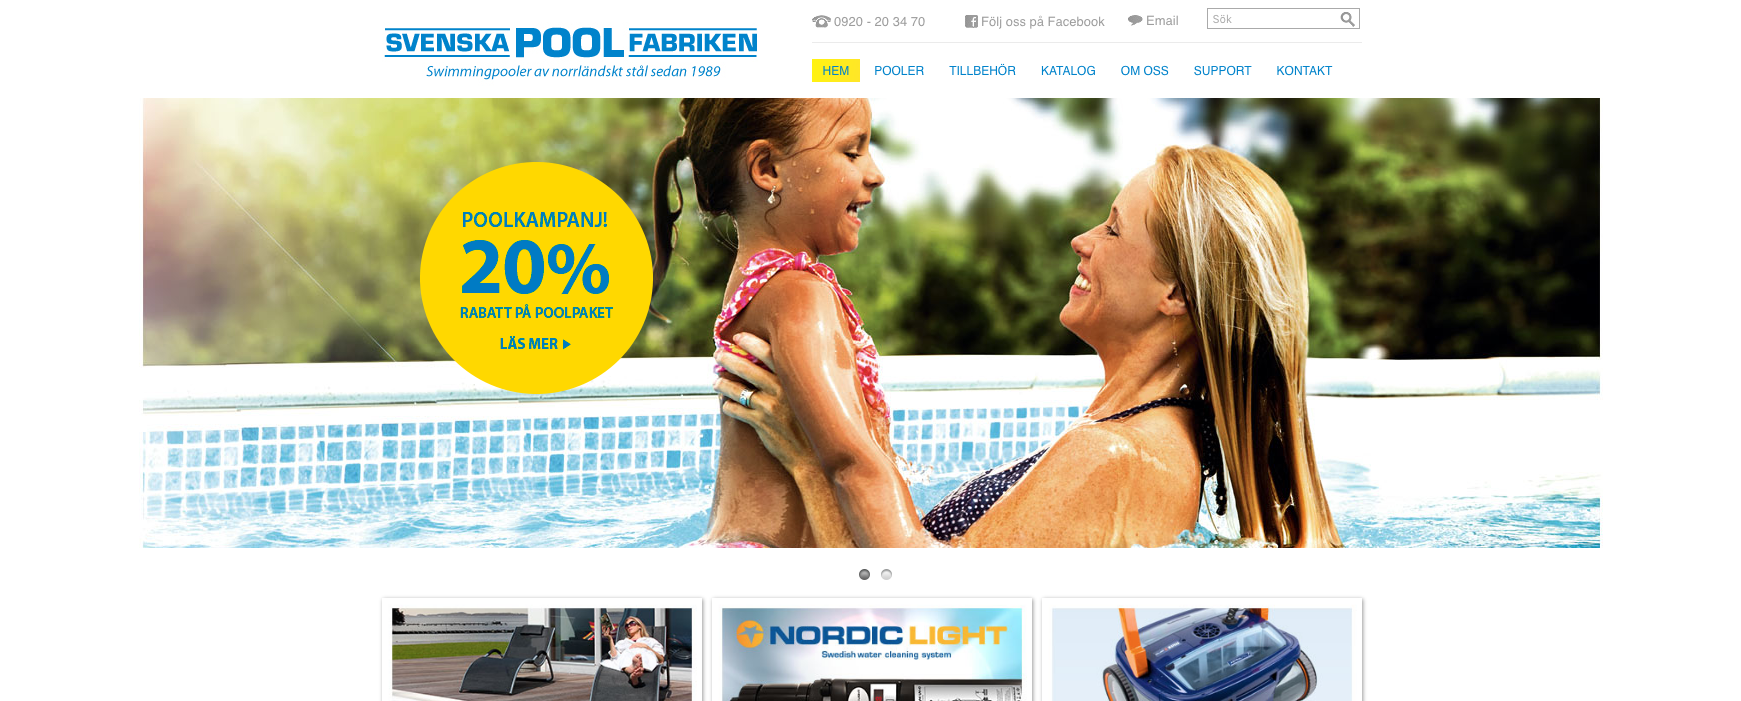 Svenska Poolfabriken har fått en ny webb